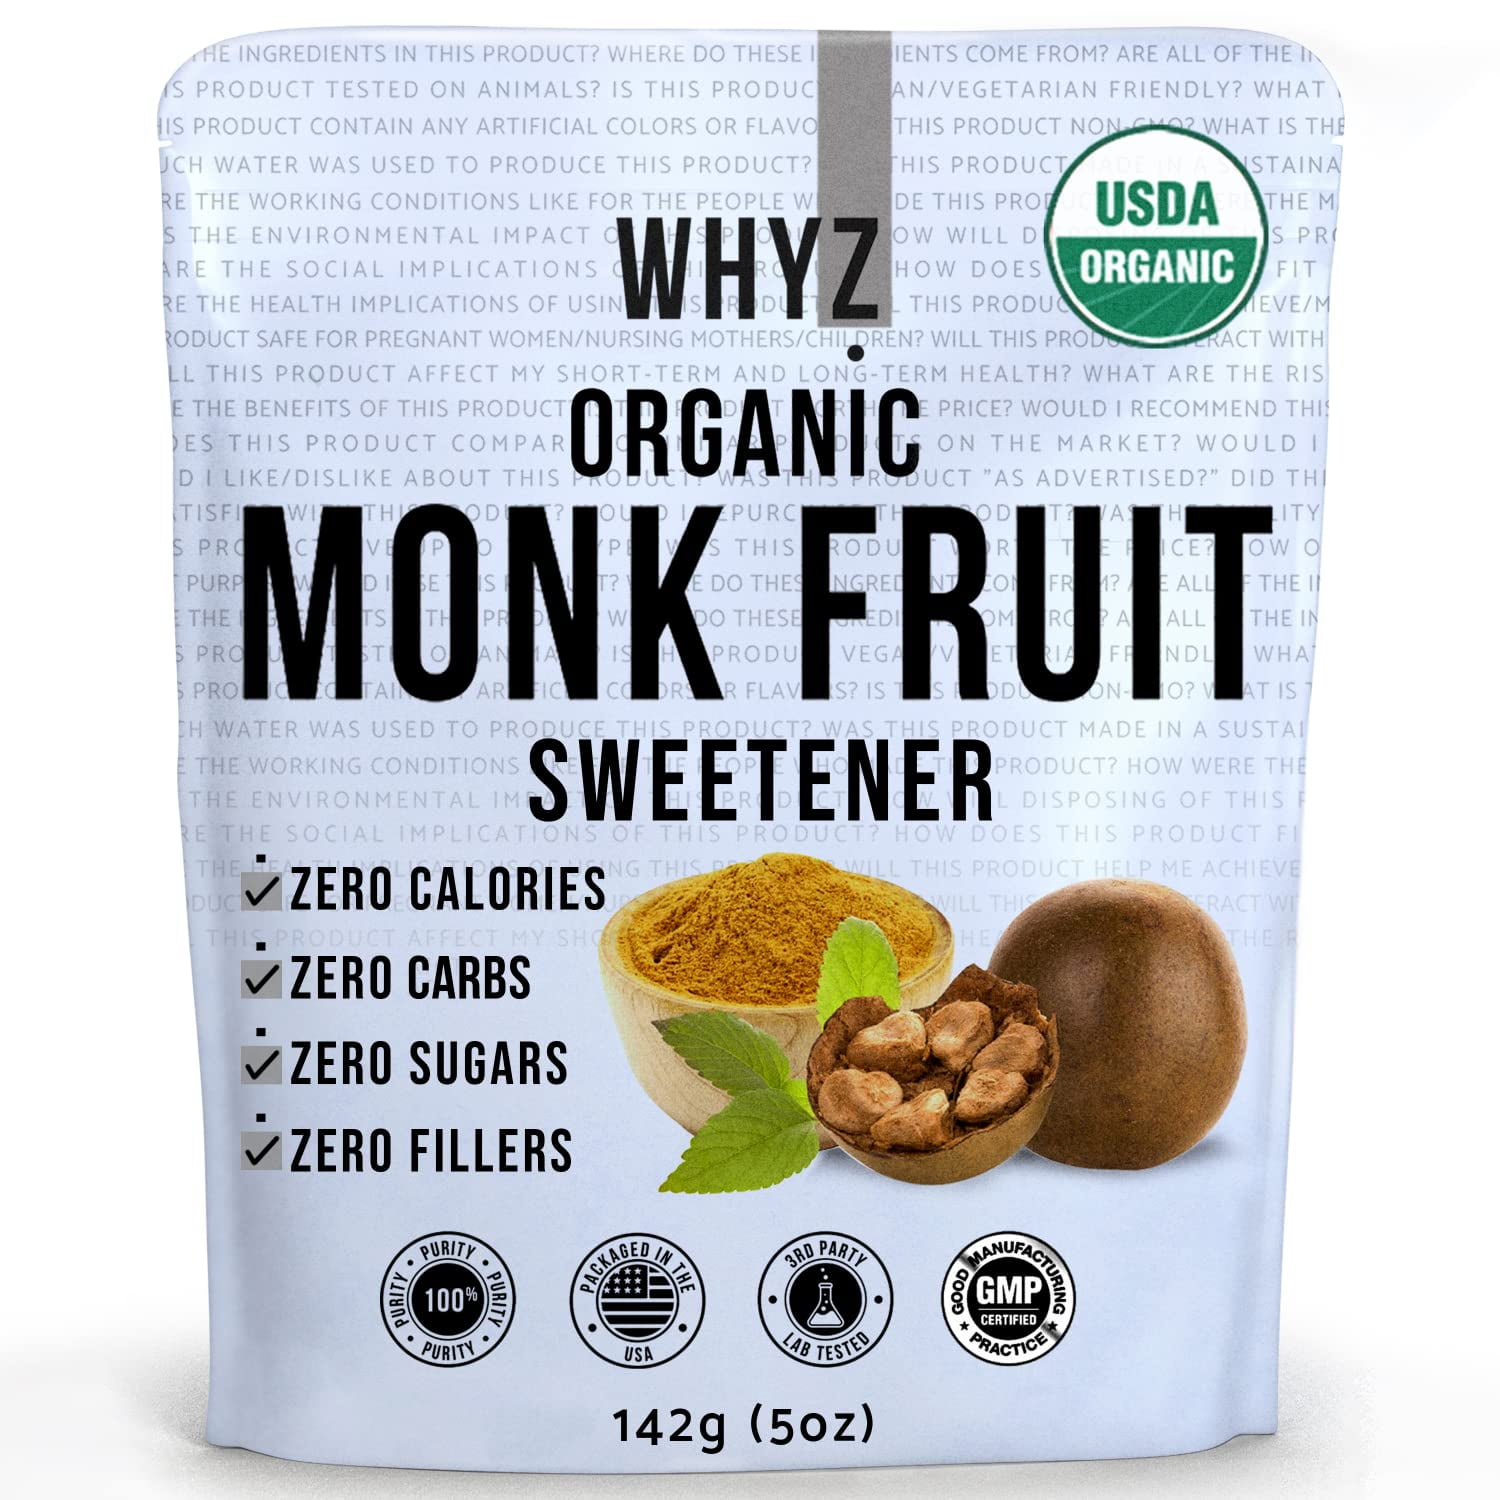 Monk Fruit Allulose Sweetener – HealthGarden